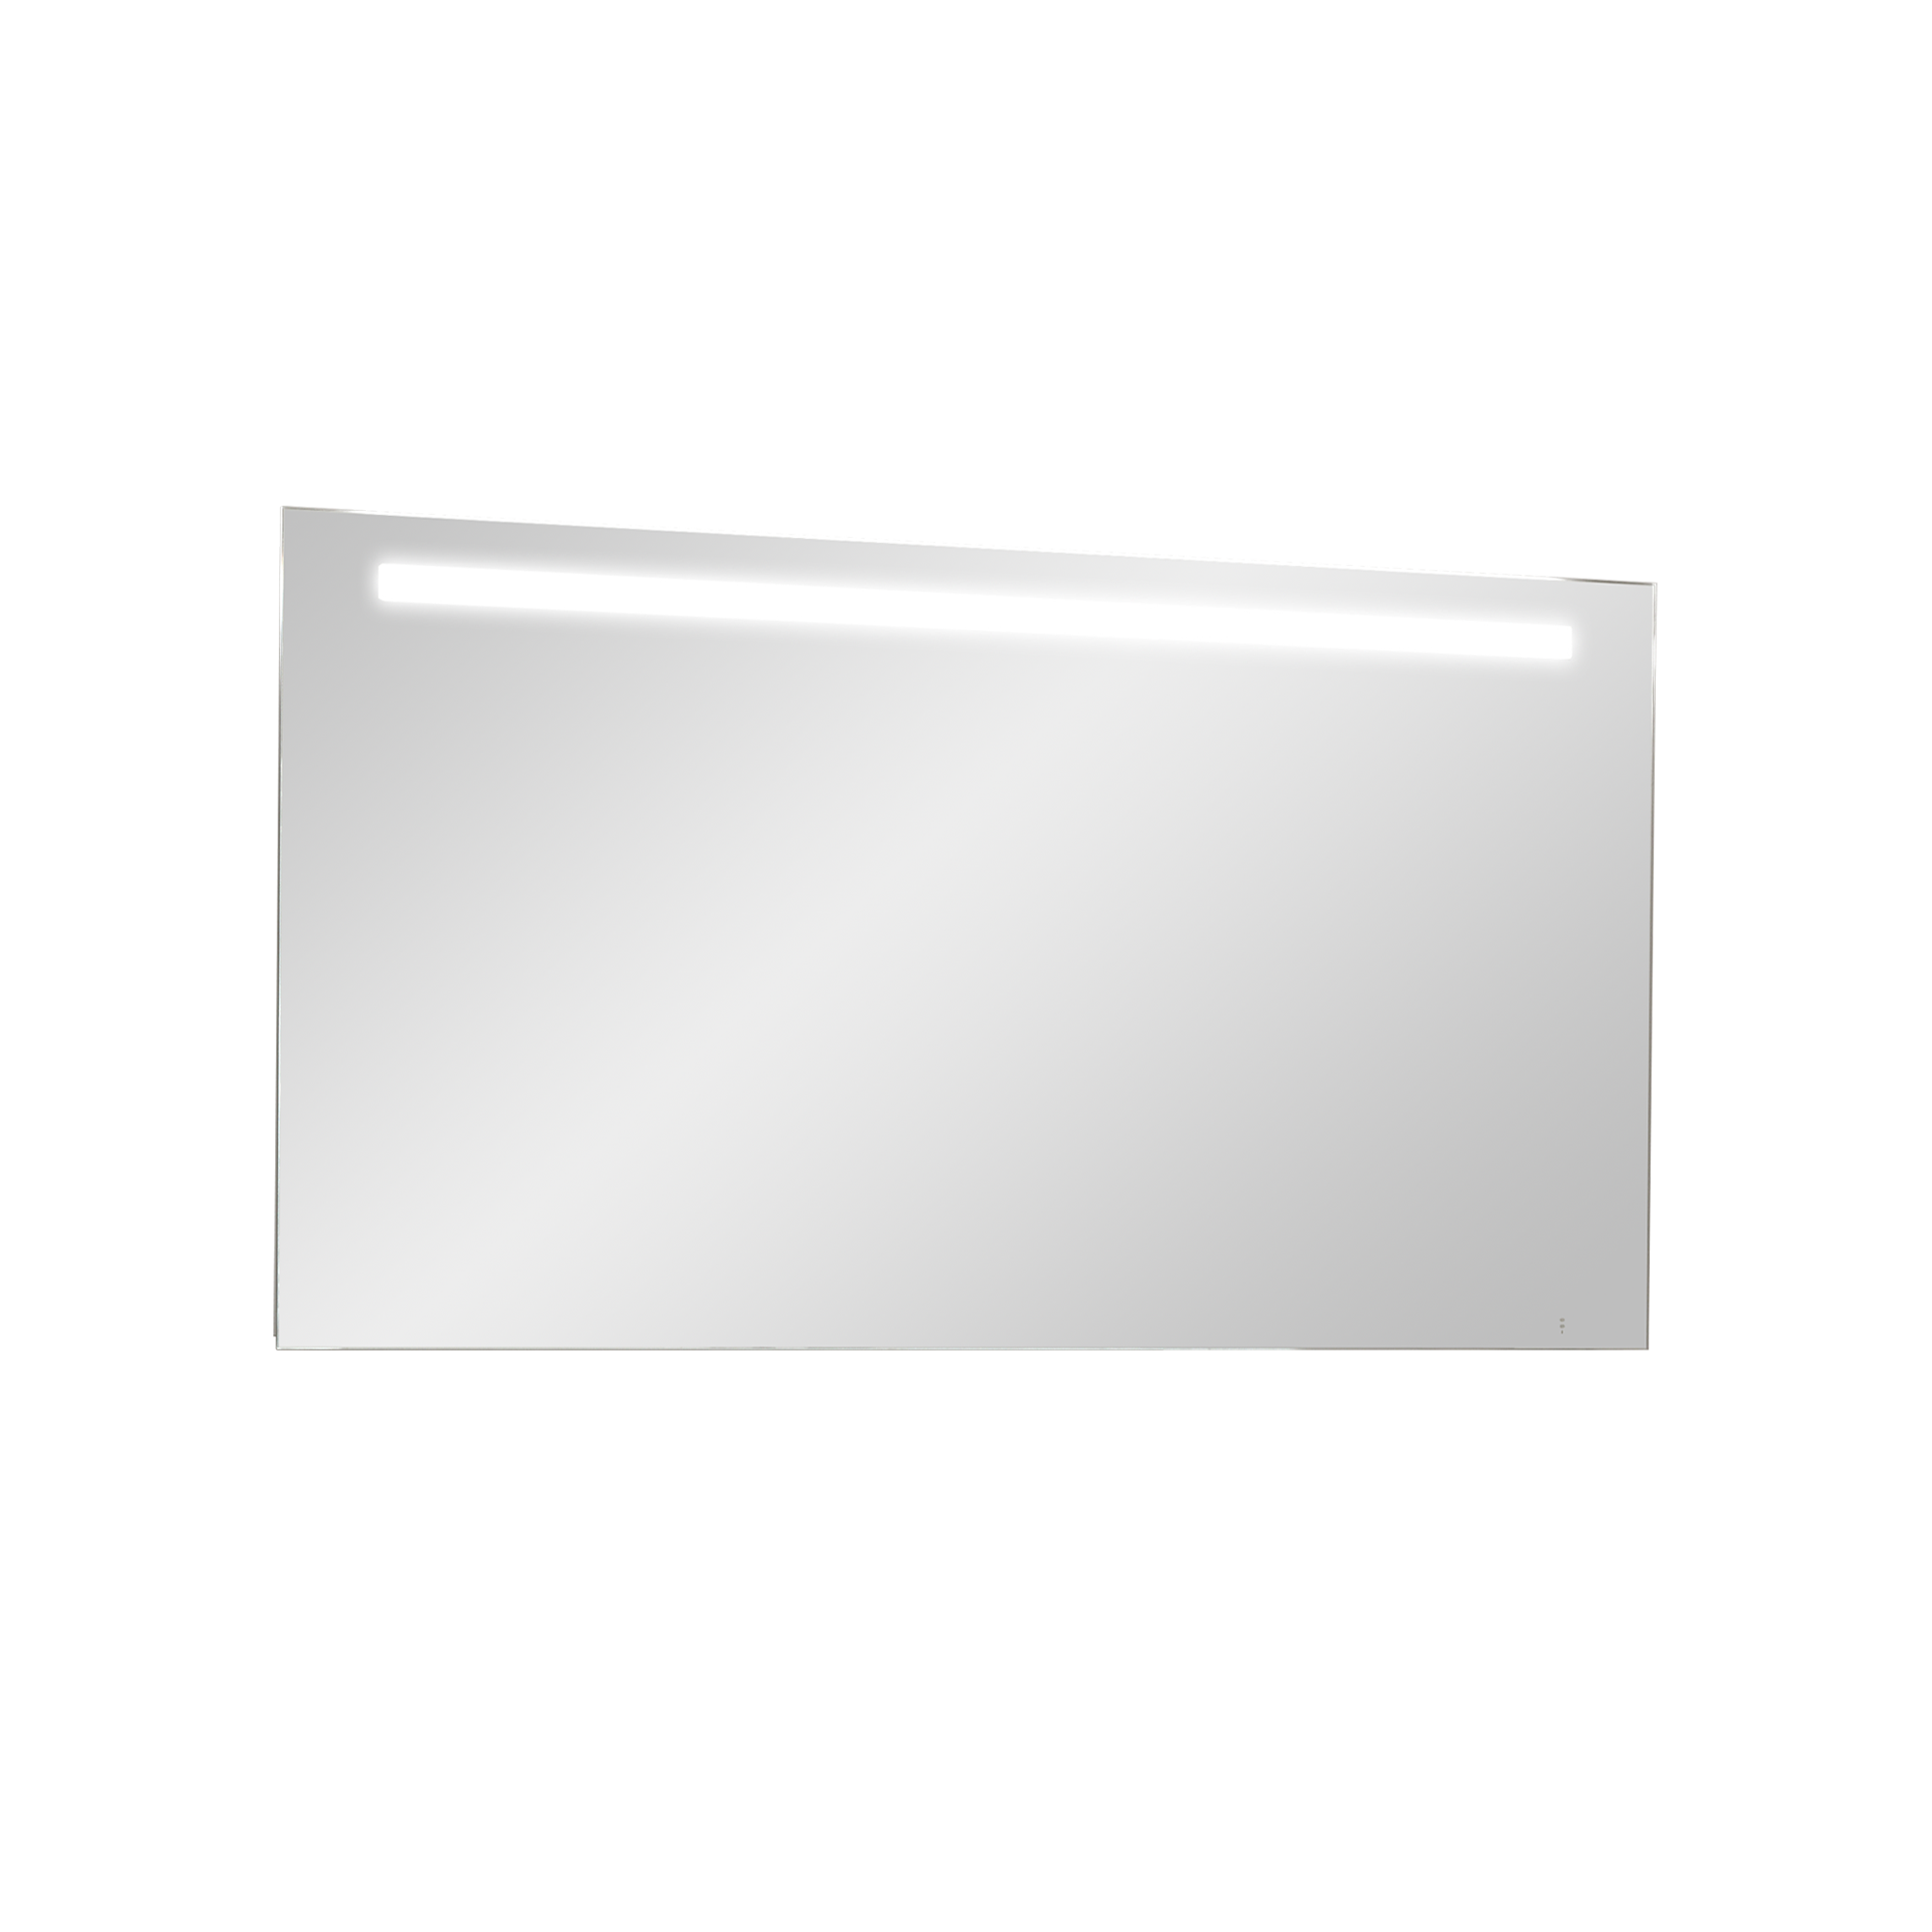 Storke Lucio rechthoekig badkamerspiegel 130 x 65 cm met spiegelverlichting